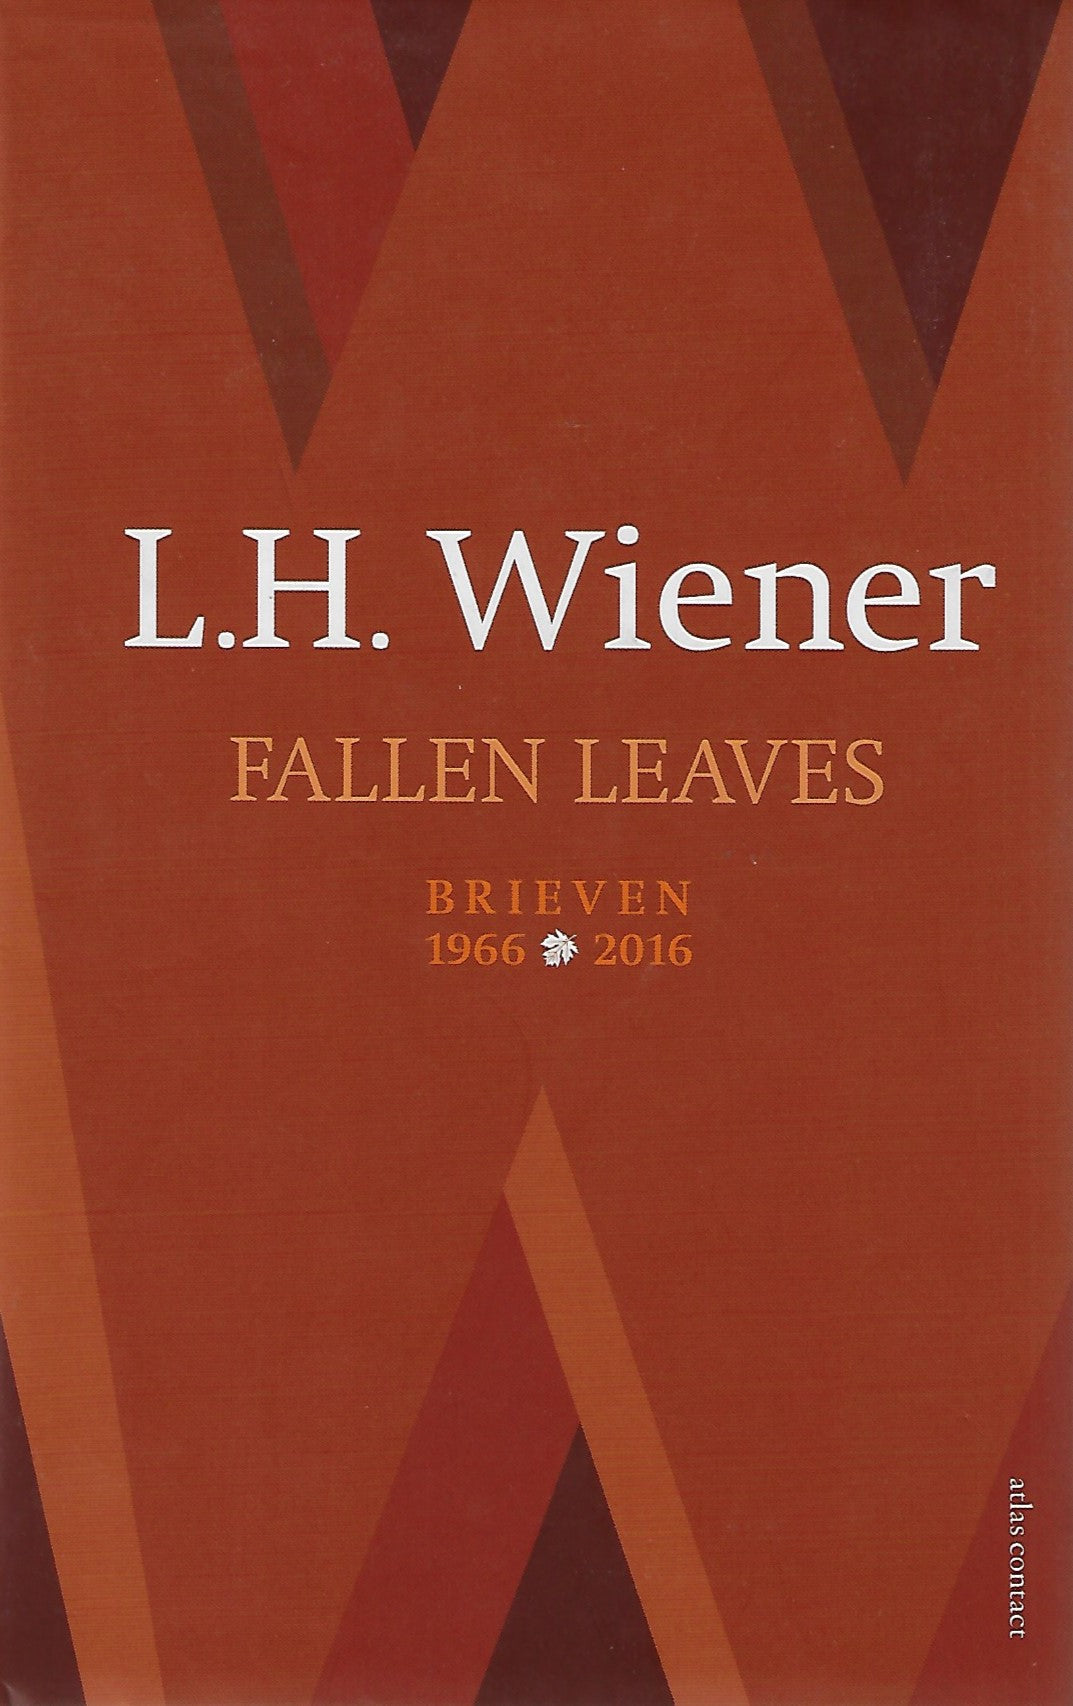 Fallen leaves / Brieven van 1966 - 2016